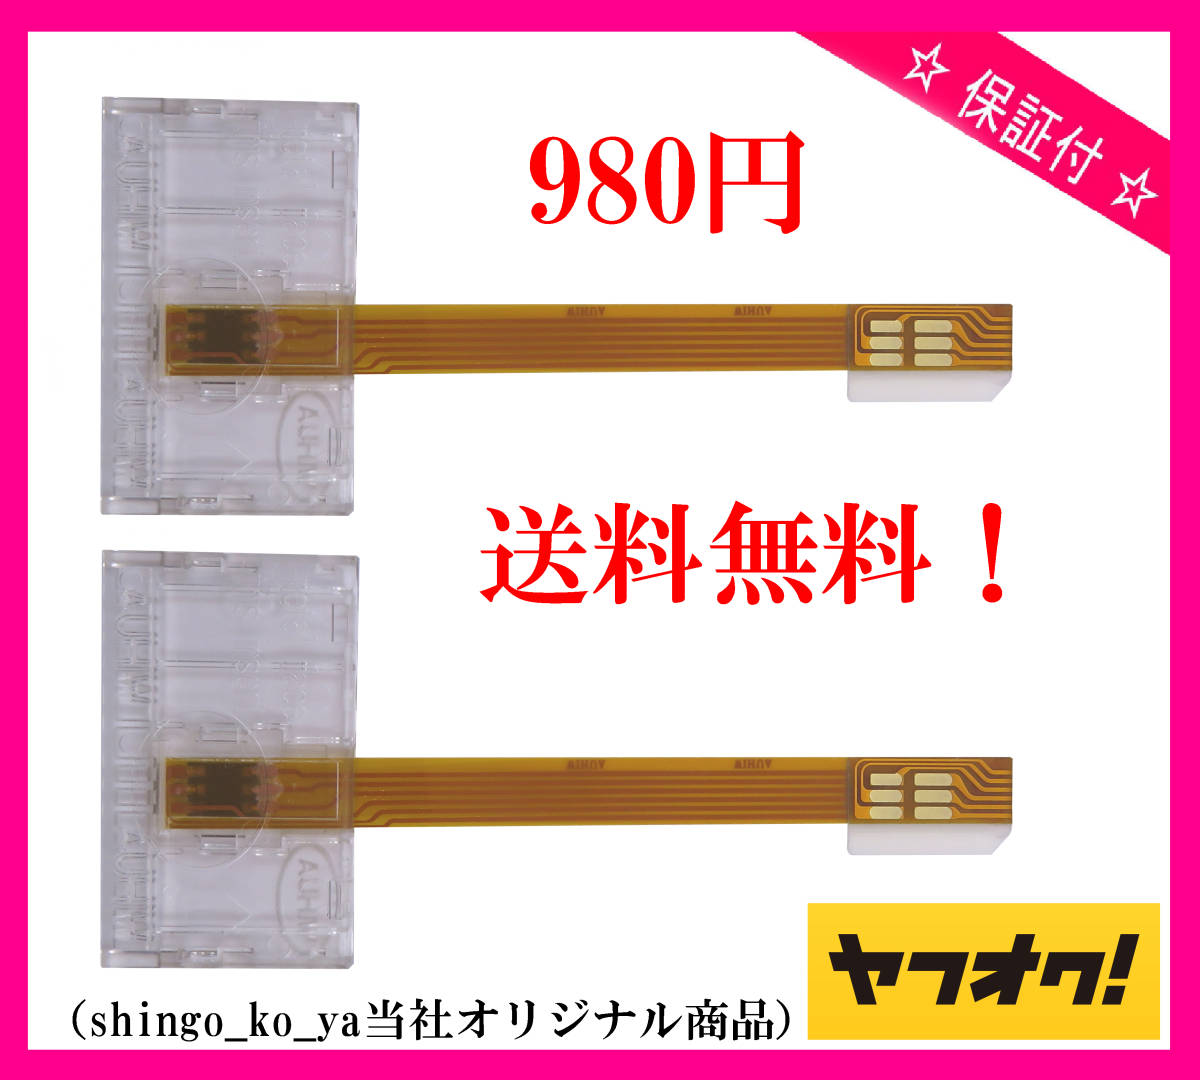 * бесплатная доставка 980 иен * * Toshiba оборудование и т.п., все модель . соответствует!* mini B-CAS адаптор ( прозрачный конвертер ) 2 шт. комплект *